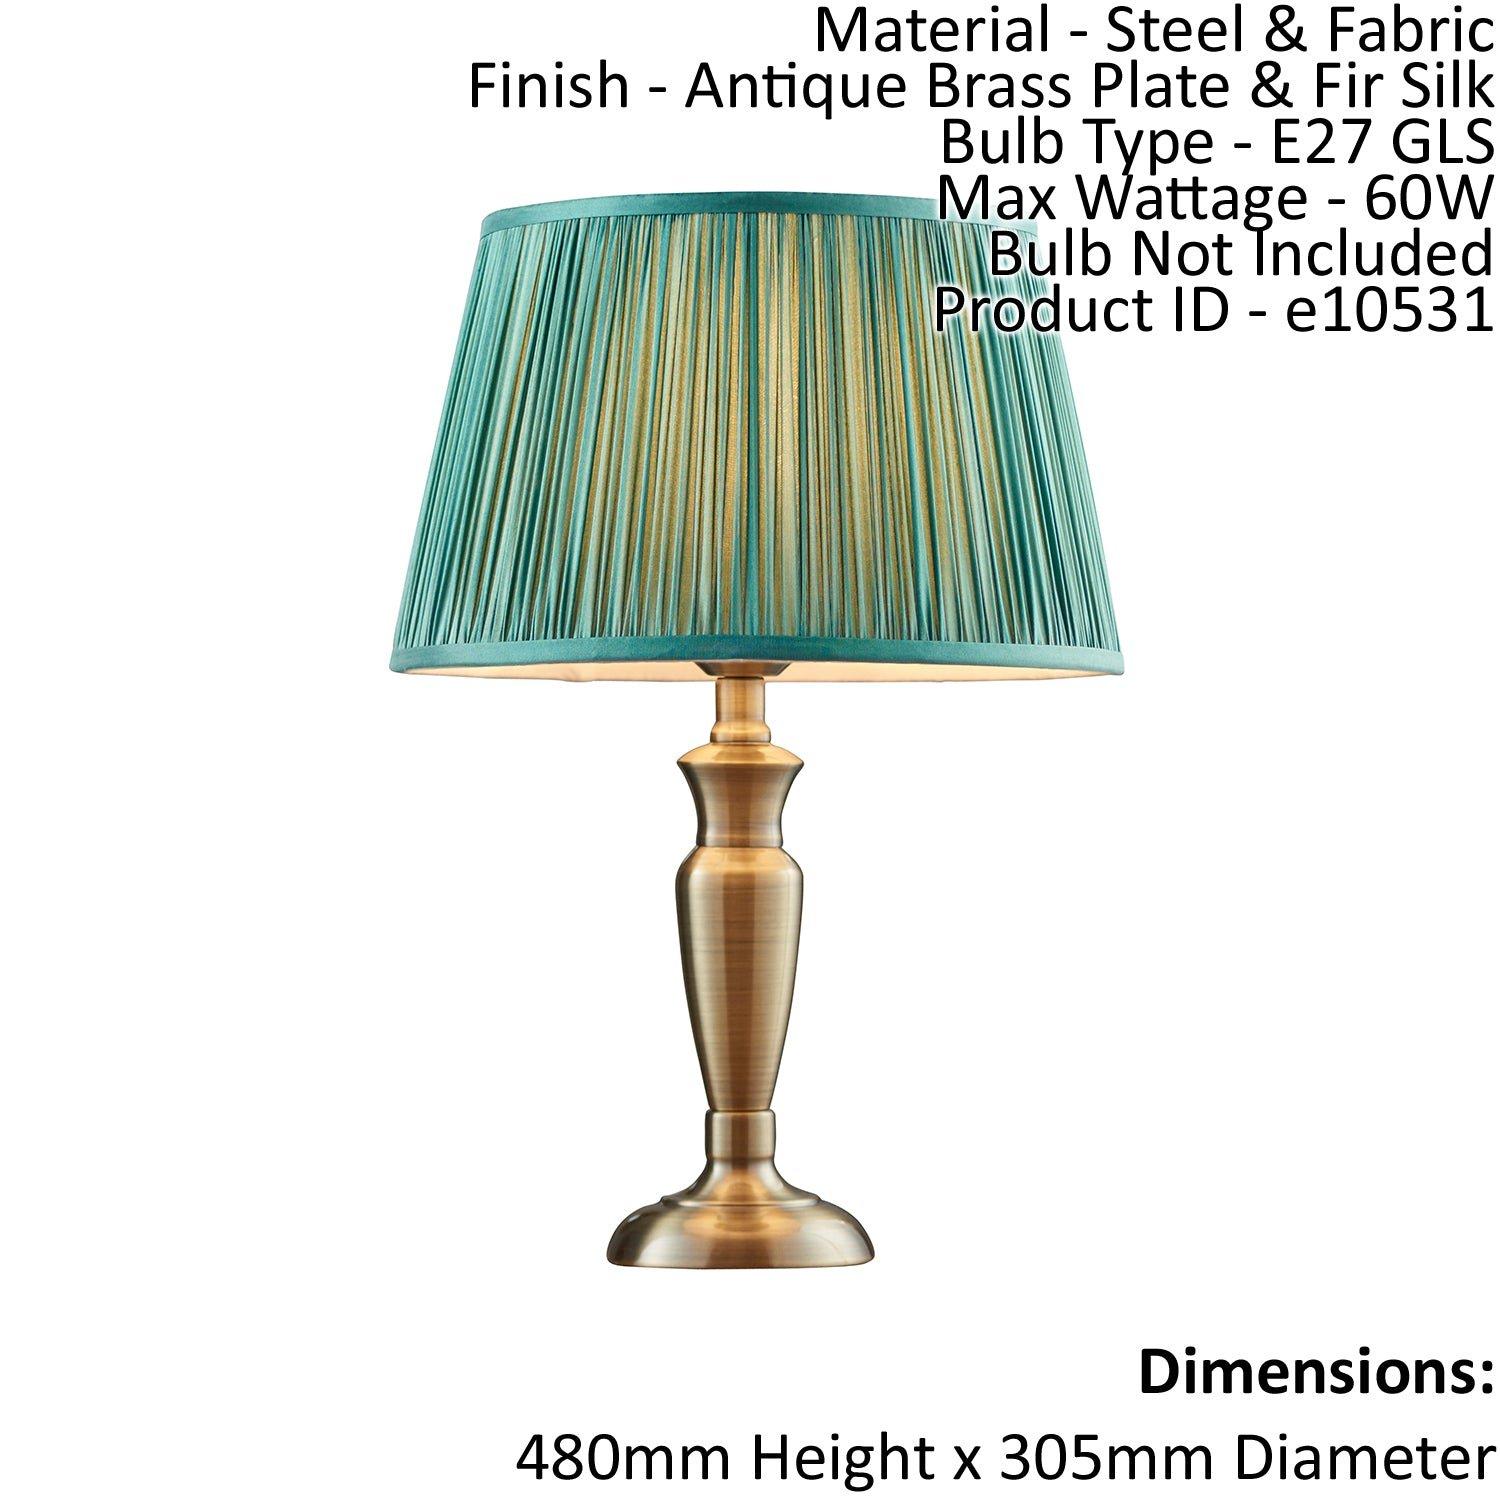 Table Lamp Antique Brass & Fir Silk 60W E27 GLS Base & Shade e10531